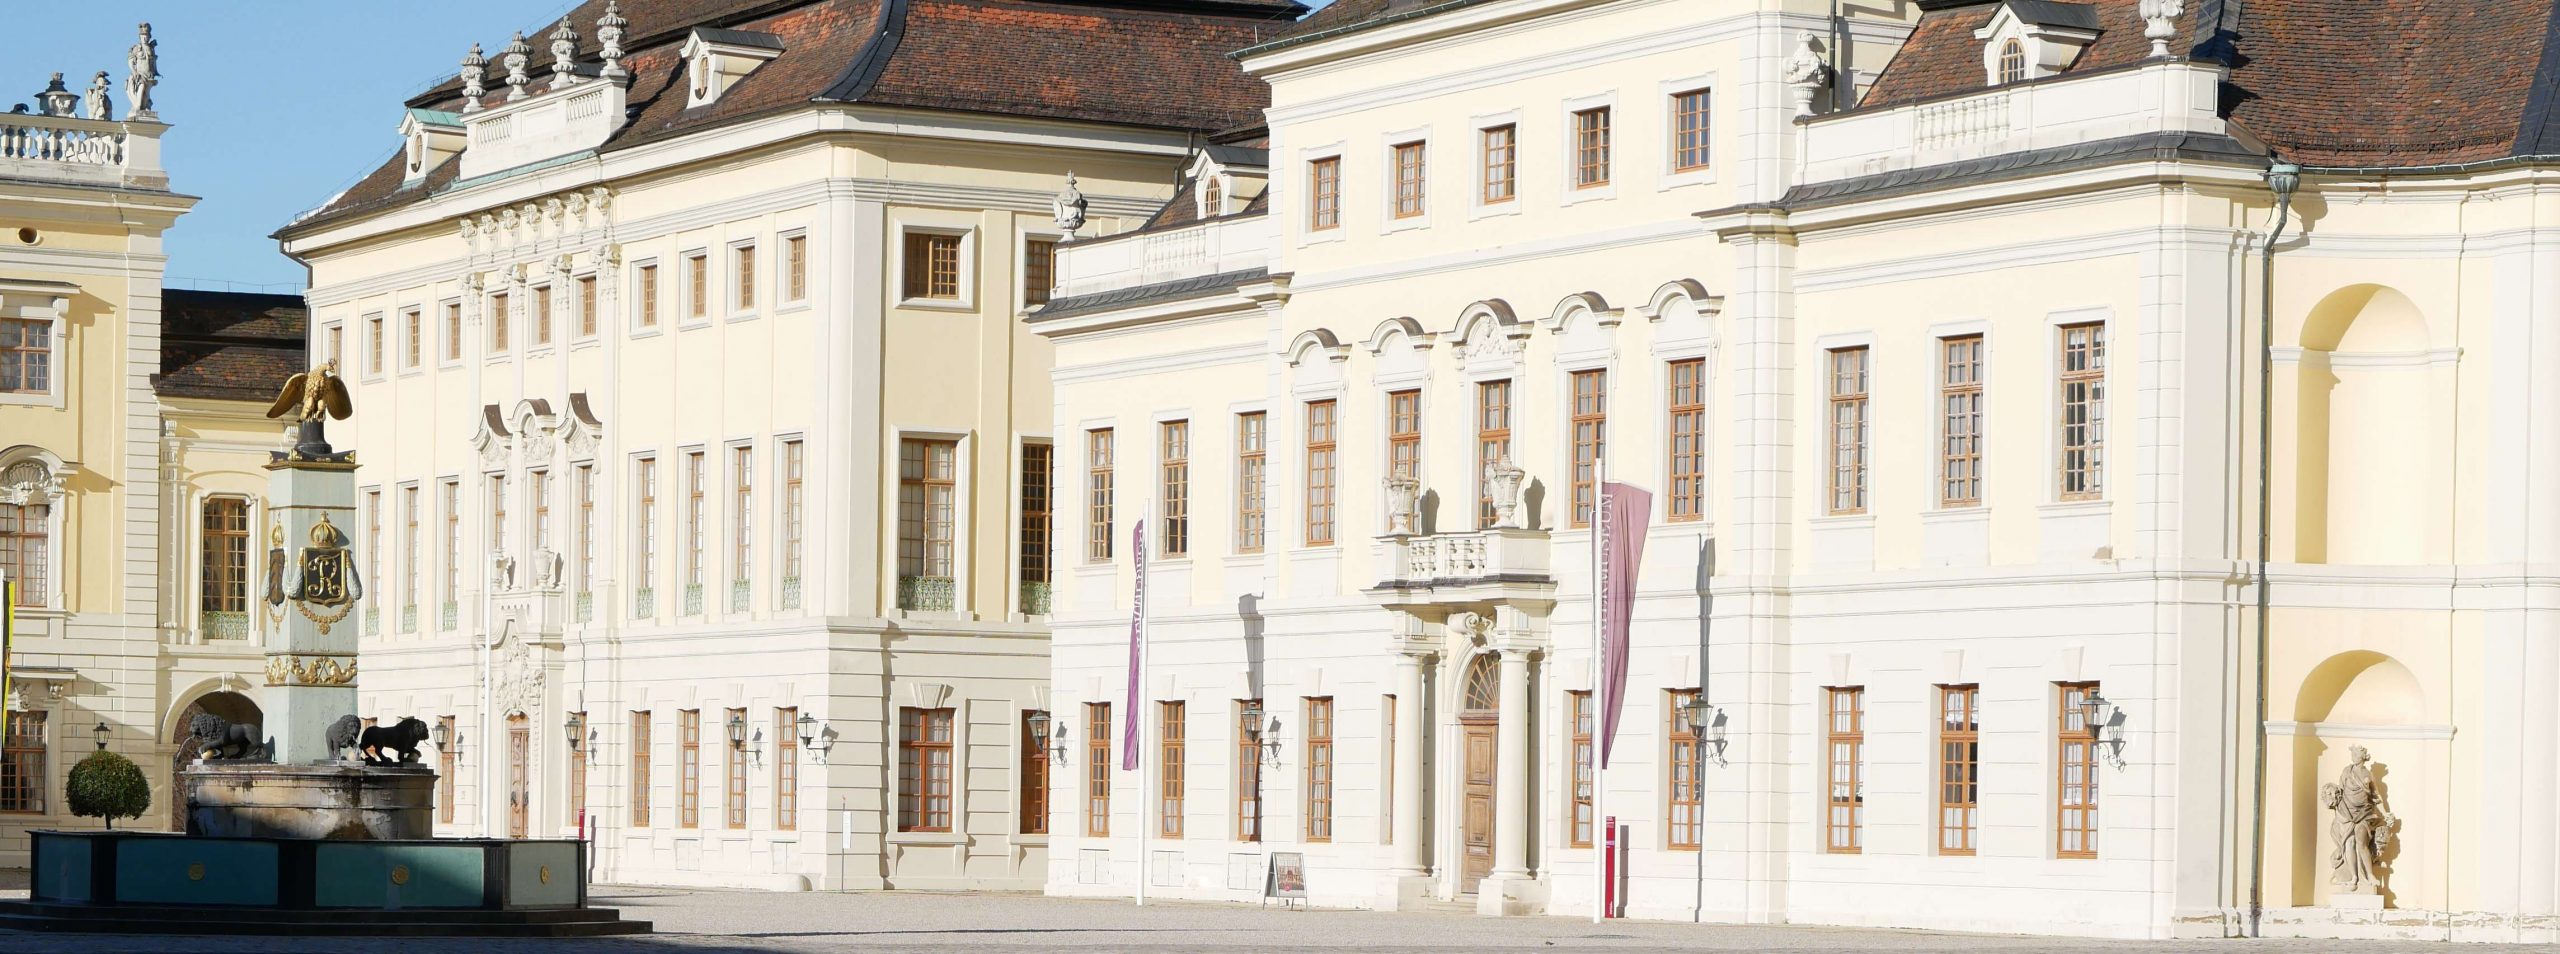 Das Barockschloss Ludwigsburg hat im Jahr über 300.000 Besucher. Foto: Uwe Roth